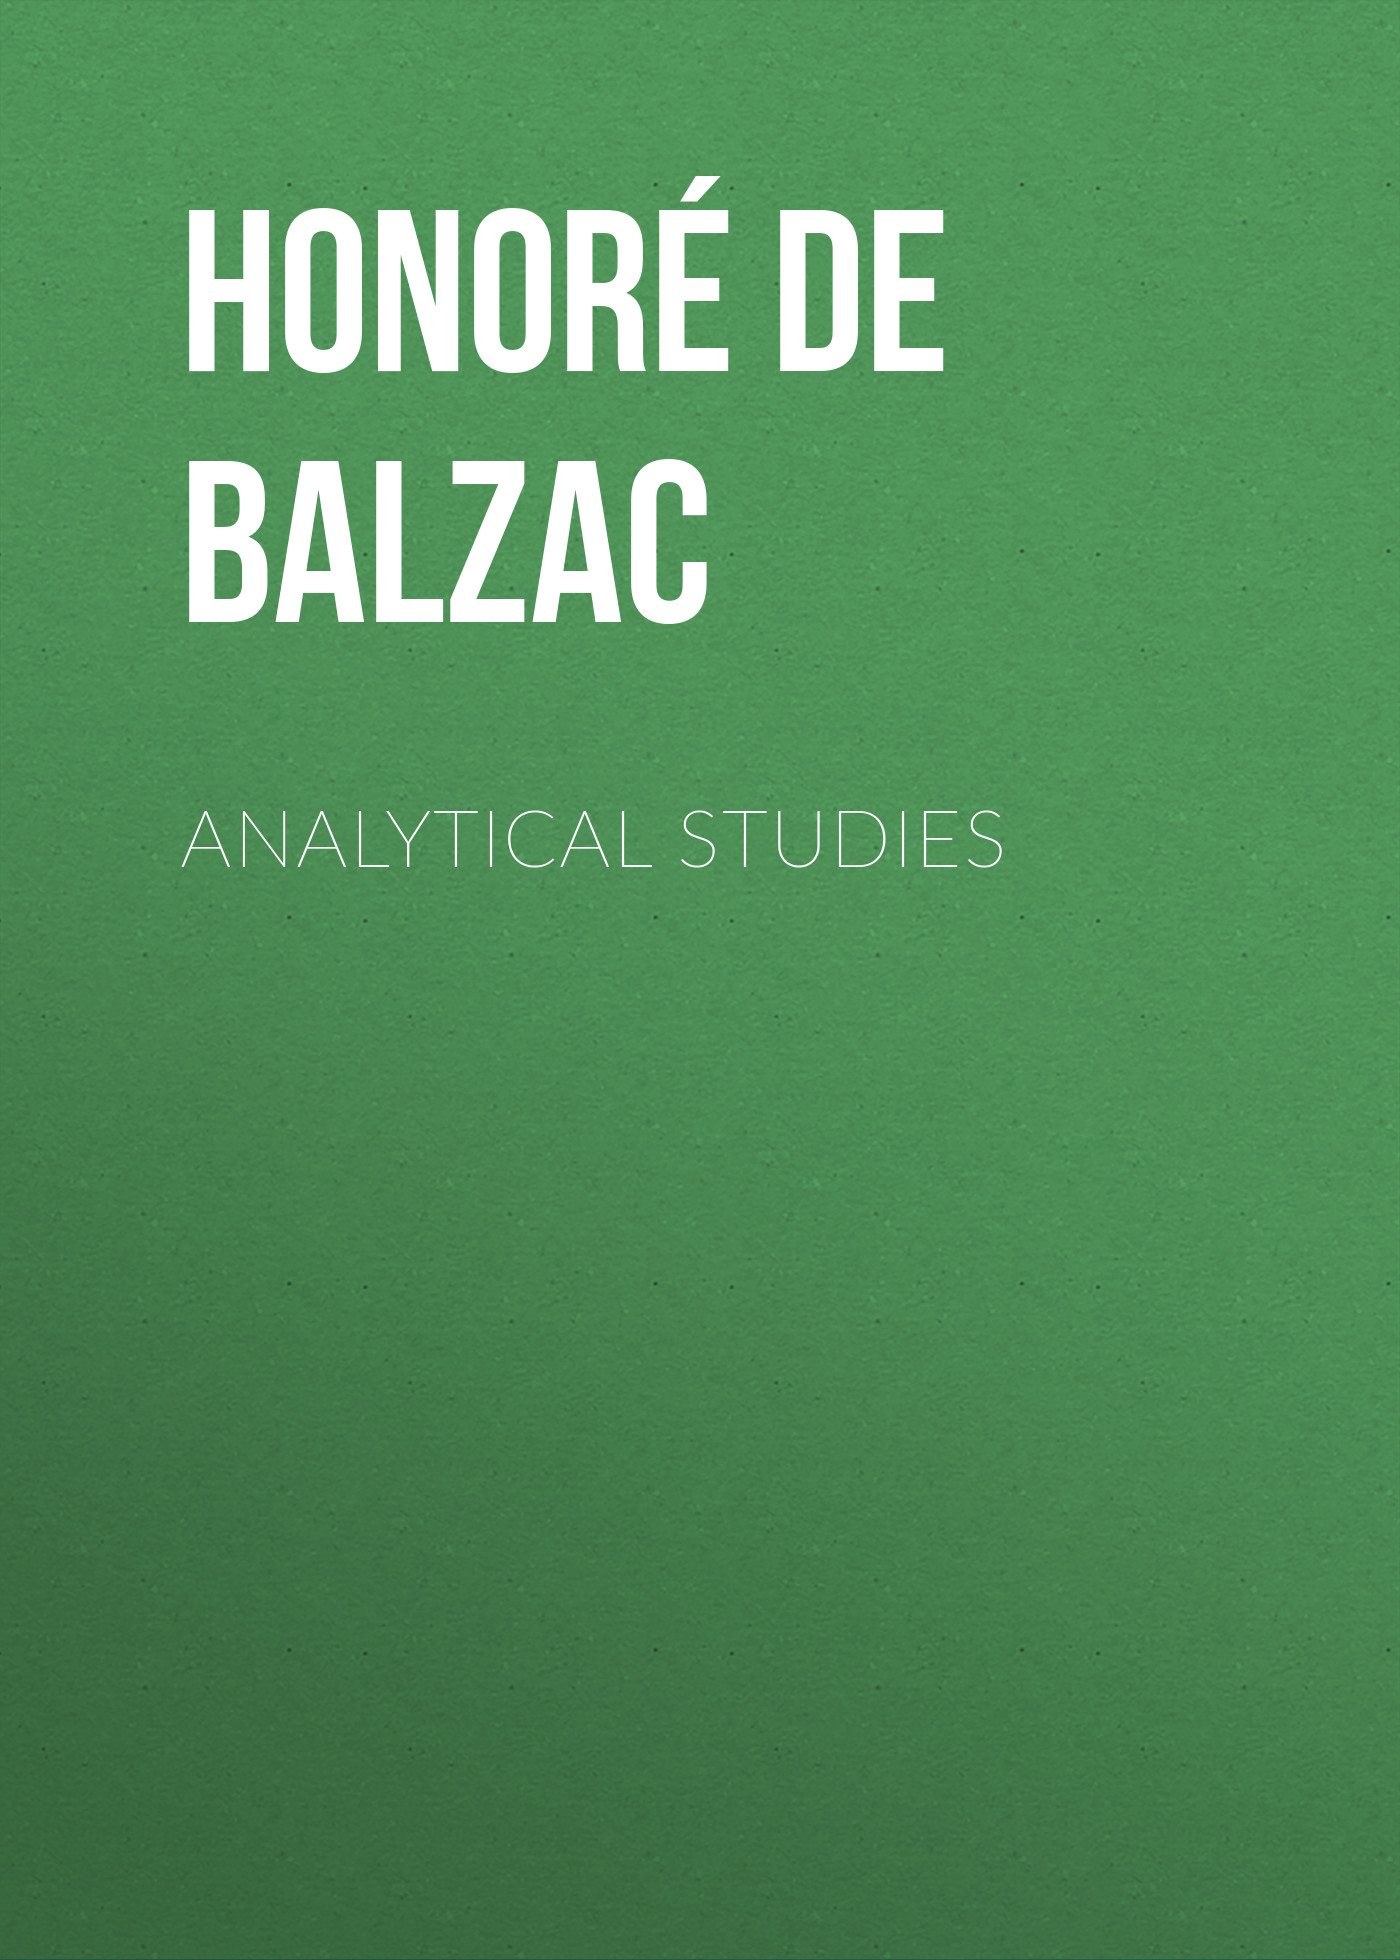 Книга Analytical Studies из серии , созданная Honoré Balzac, может относится к жанру Литература 19 века, Зарубежная старинная литература, Зарубежная классика. Стоимость электронной книги Analytical Studies с идентификатором 25020795 составляет 0 руб.